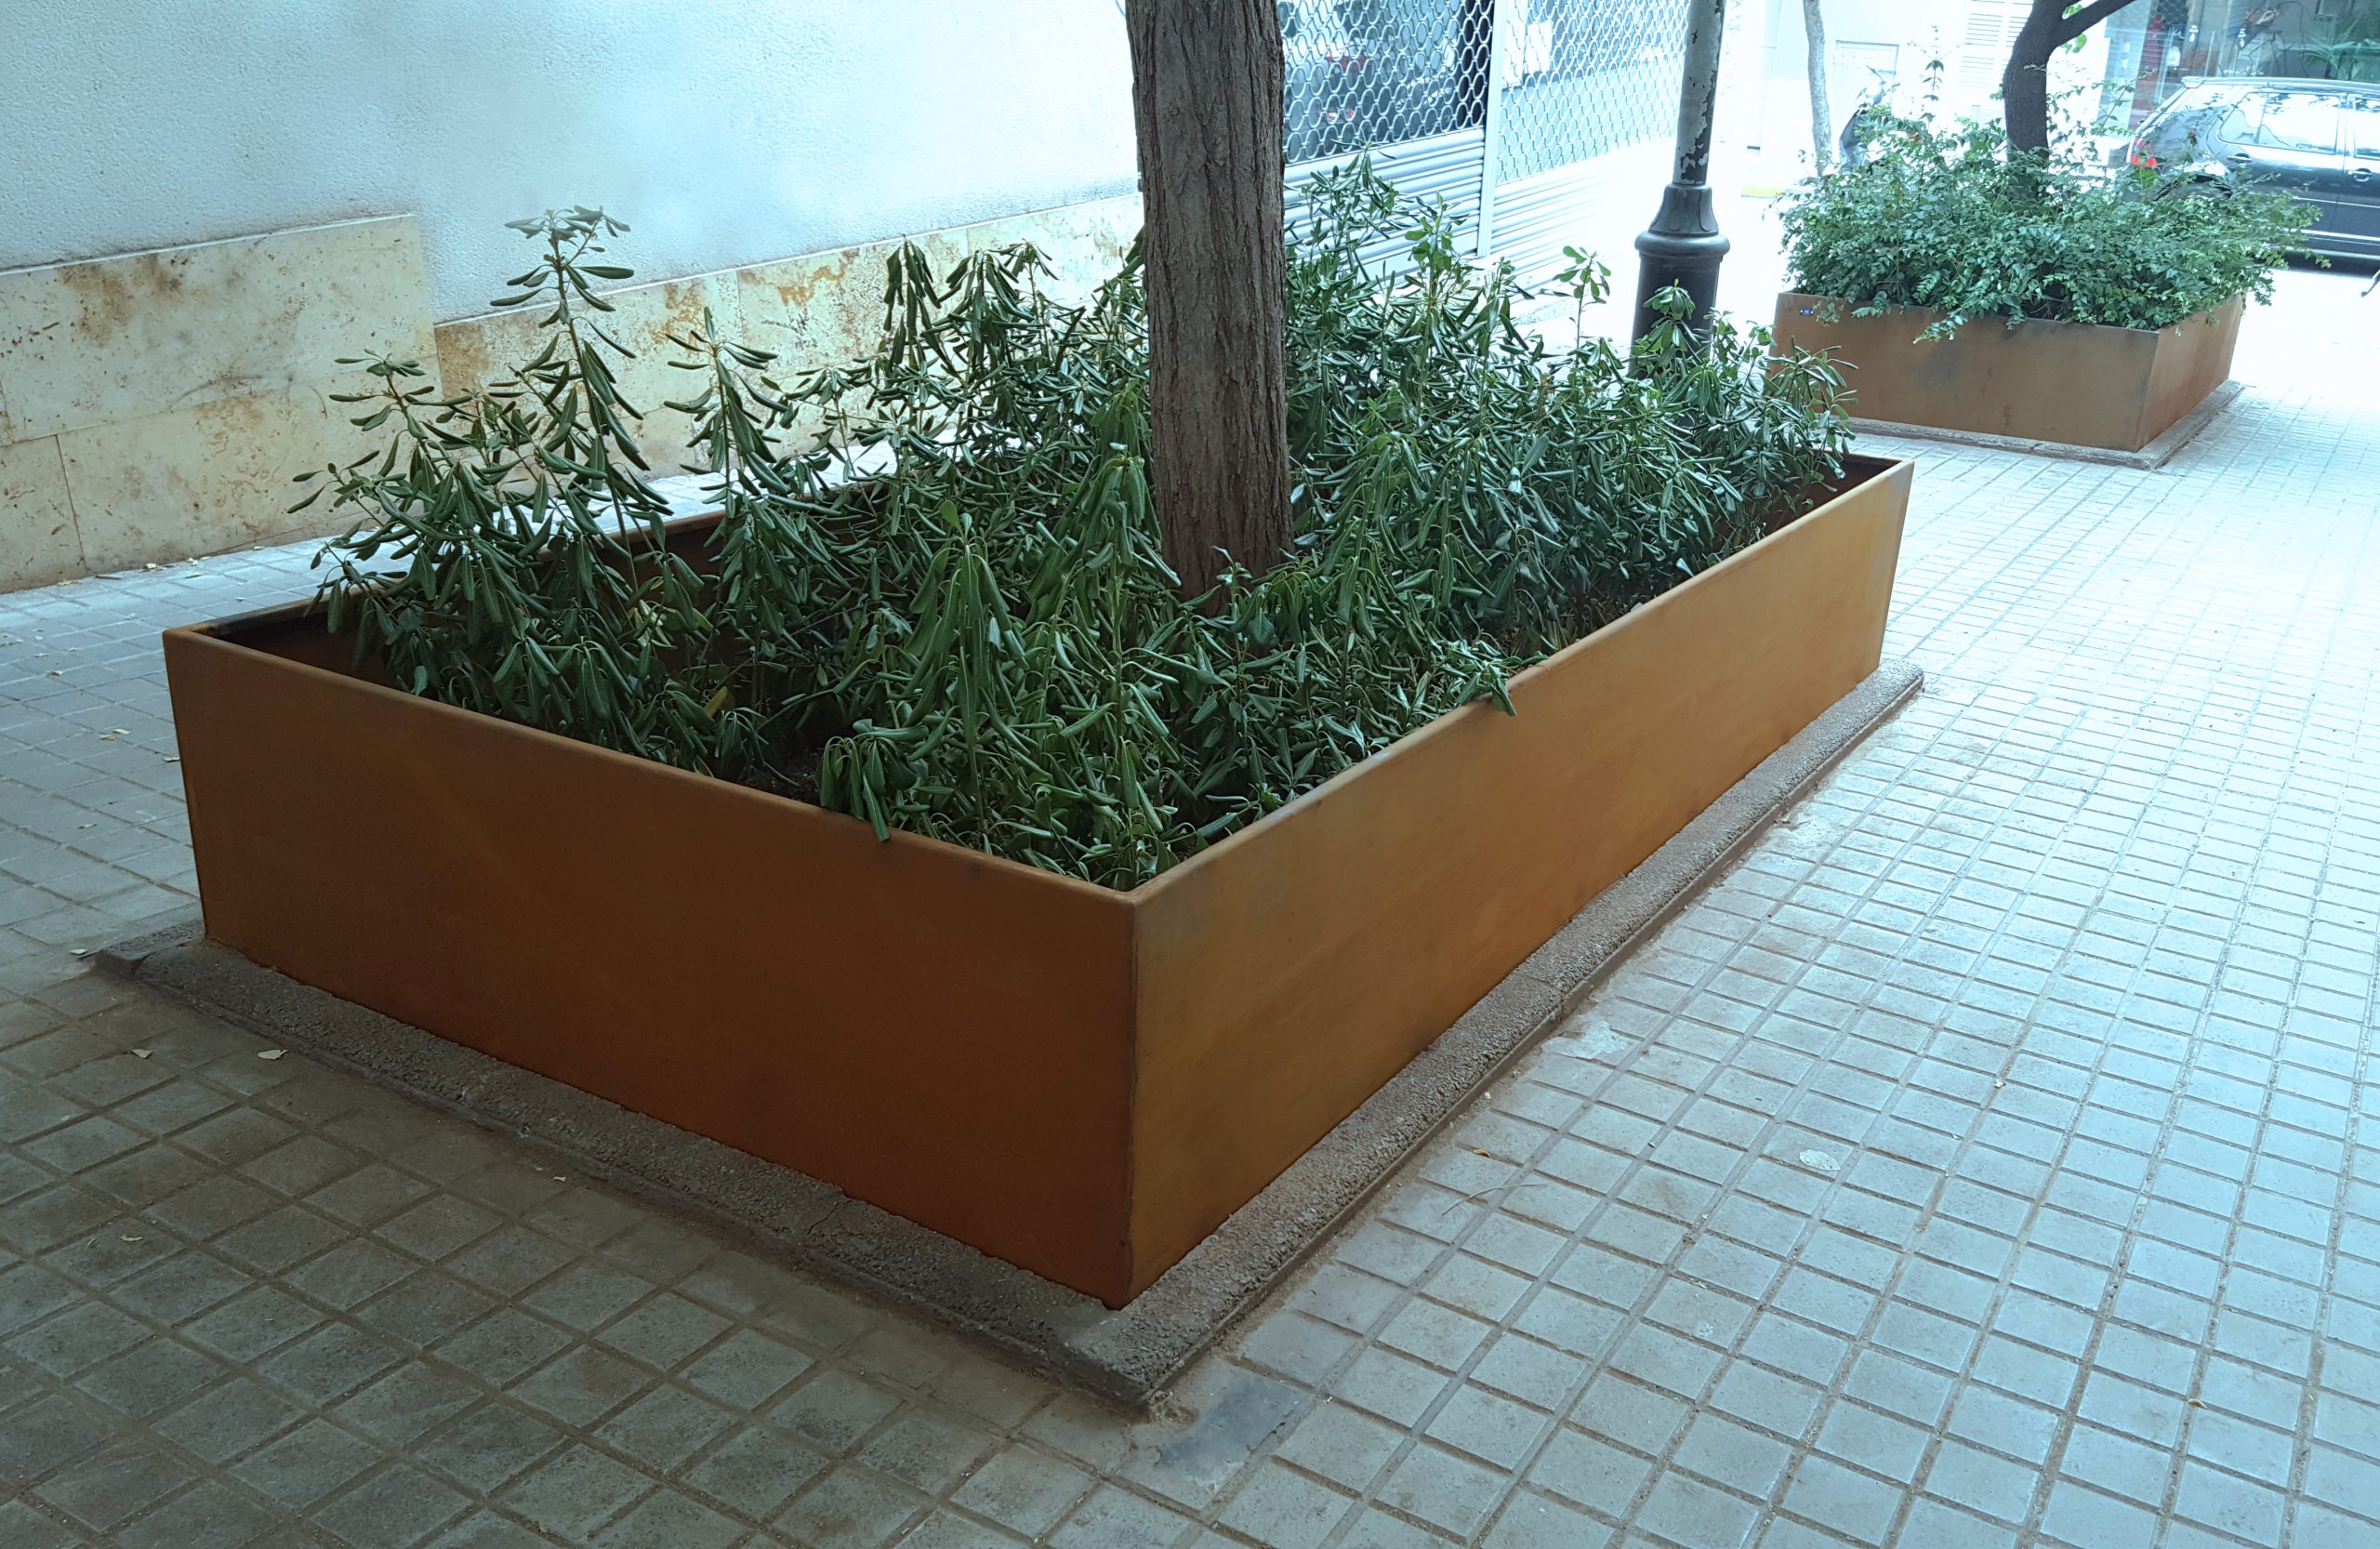 Instalación de jardineras a medida de acero Corten para mejorar la estética de las calles de Masnou